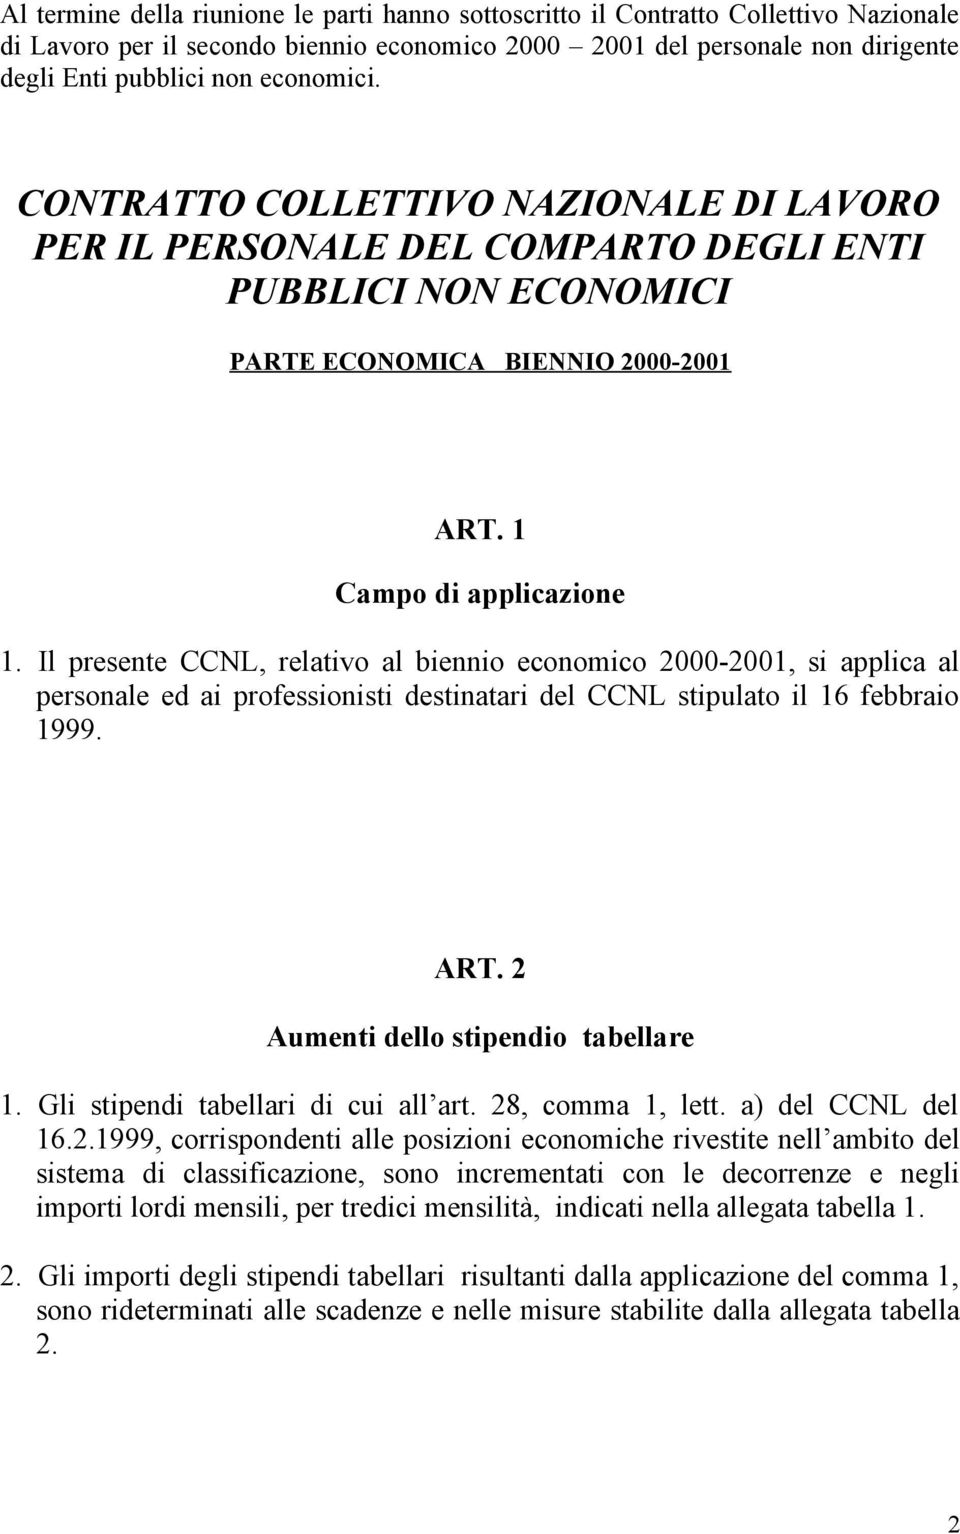 Il presente CCNL, relativo al biennio economico 2000-2001, si applica al personale ed ai professionisti destinatari del CCNL stipulato il 16 febbraio 1999. ART. 2 Aumenti dello stipendio tabellare 1.